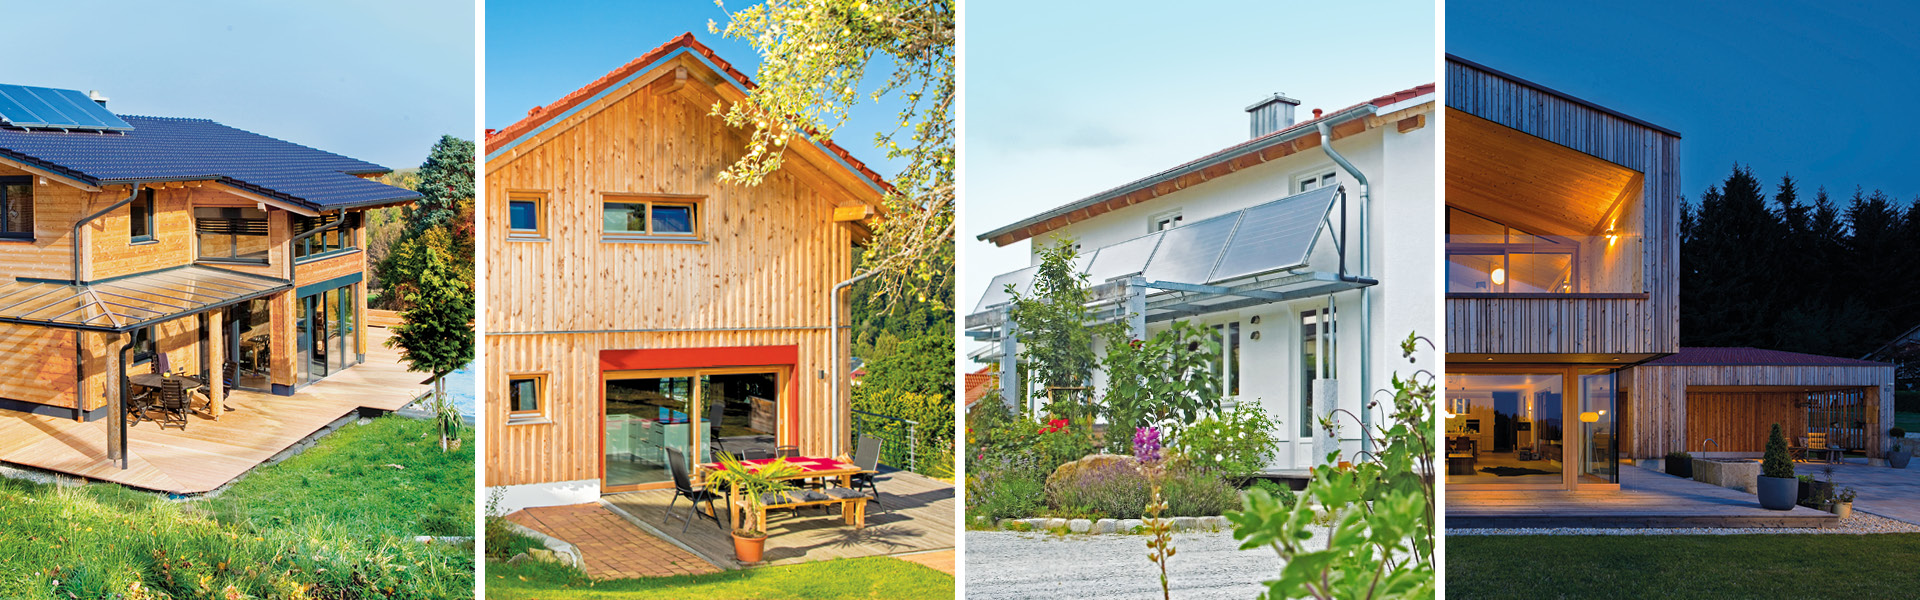 Foto-Collage aus vier Massivholzhäusern mit unterschiedlichem Aussehen und Fassadengestaltung